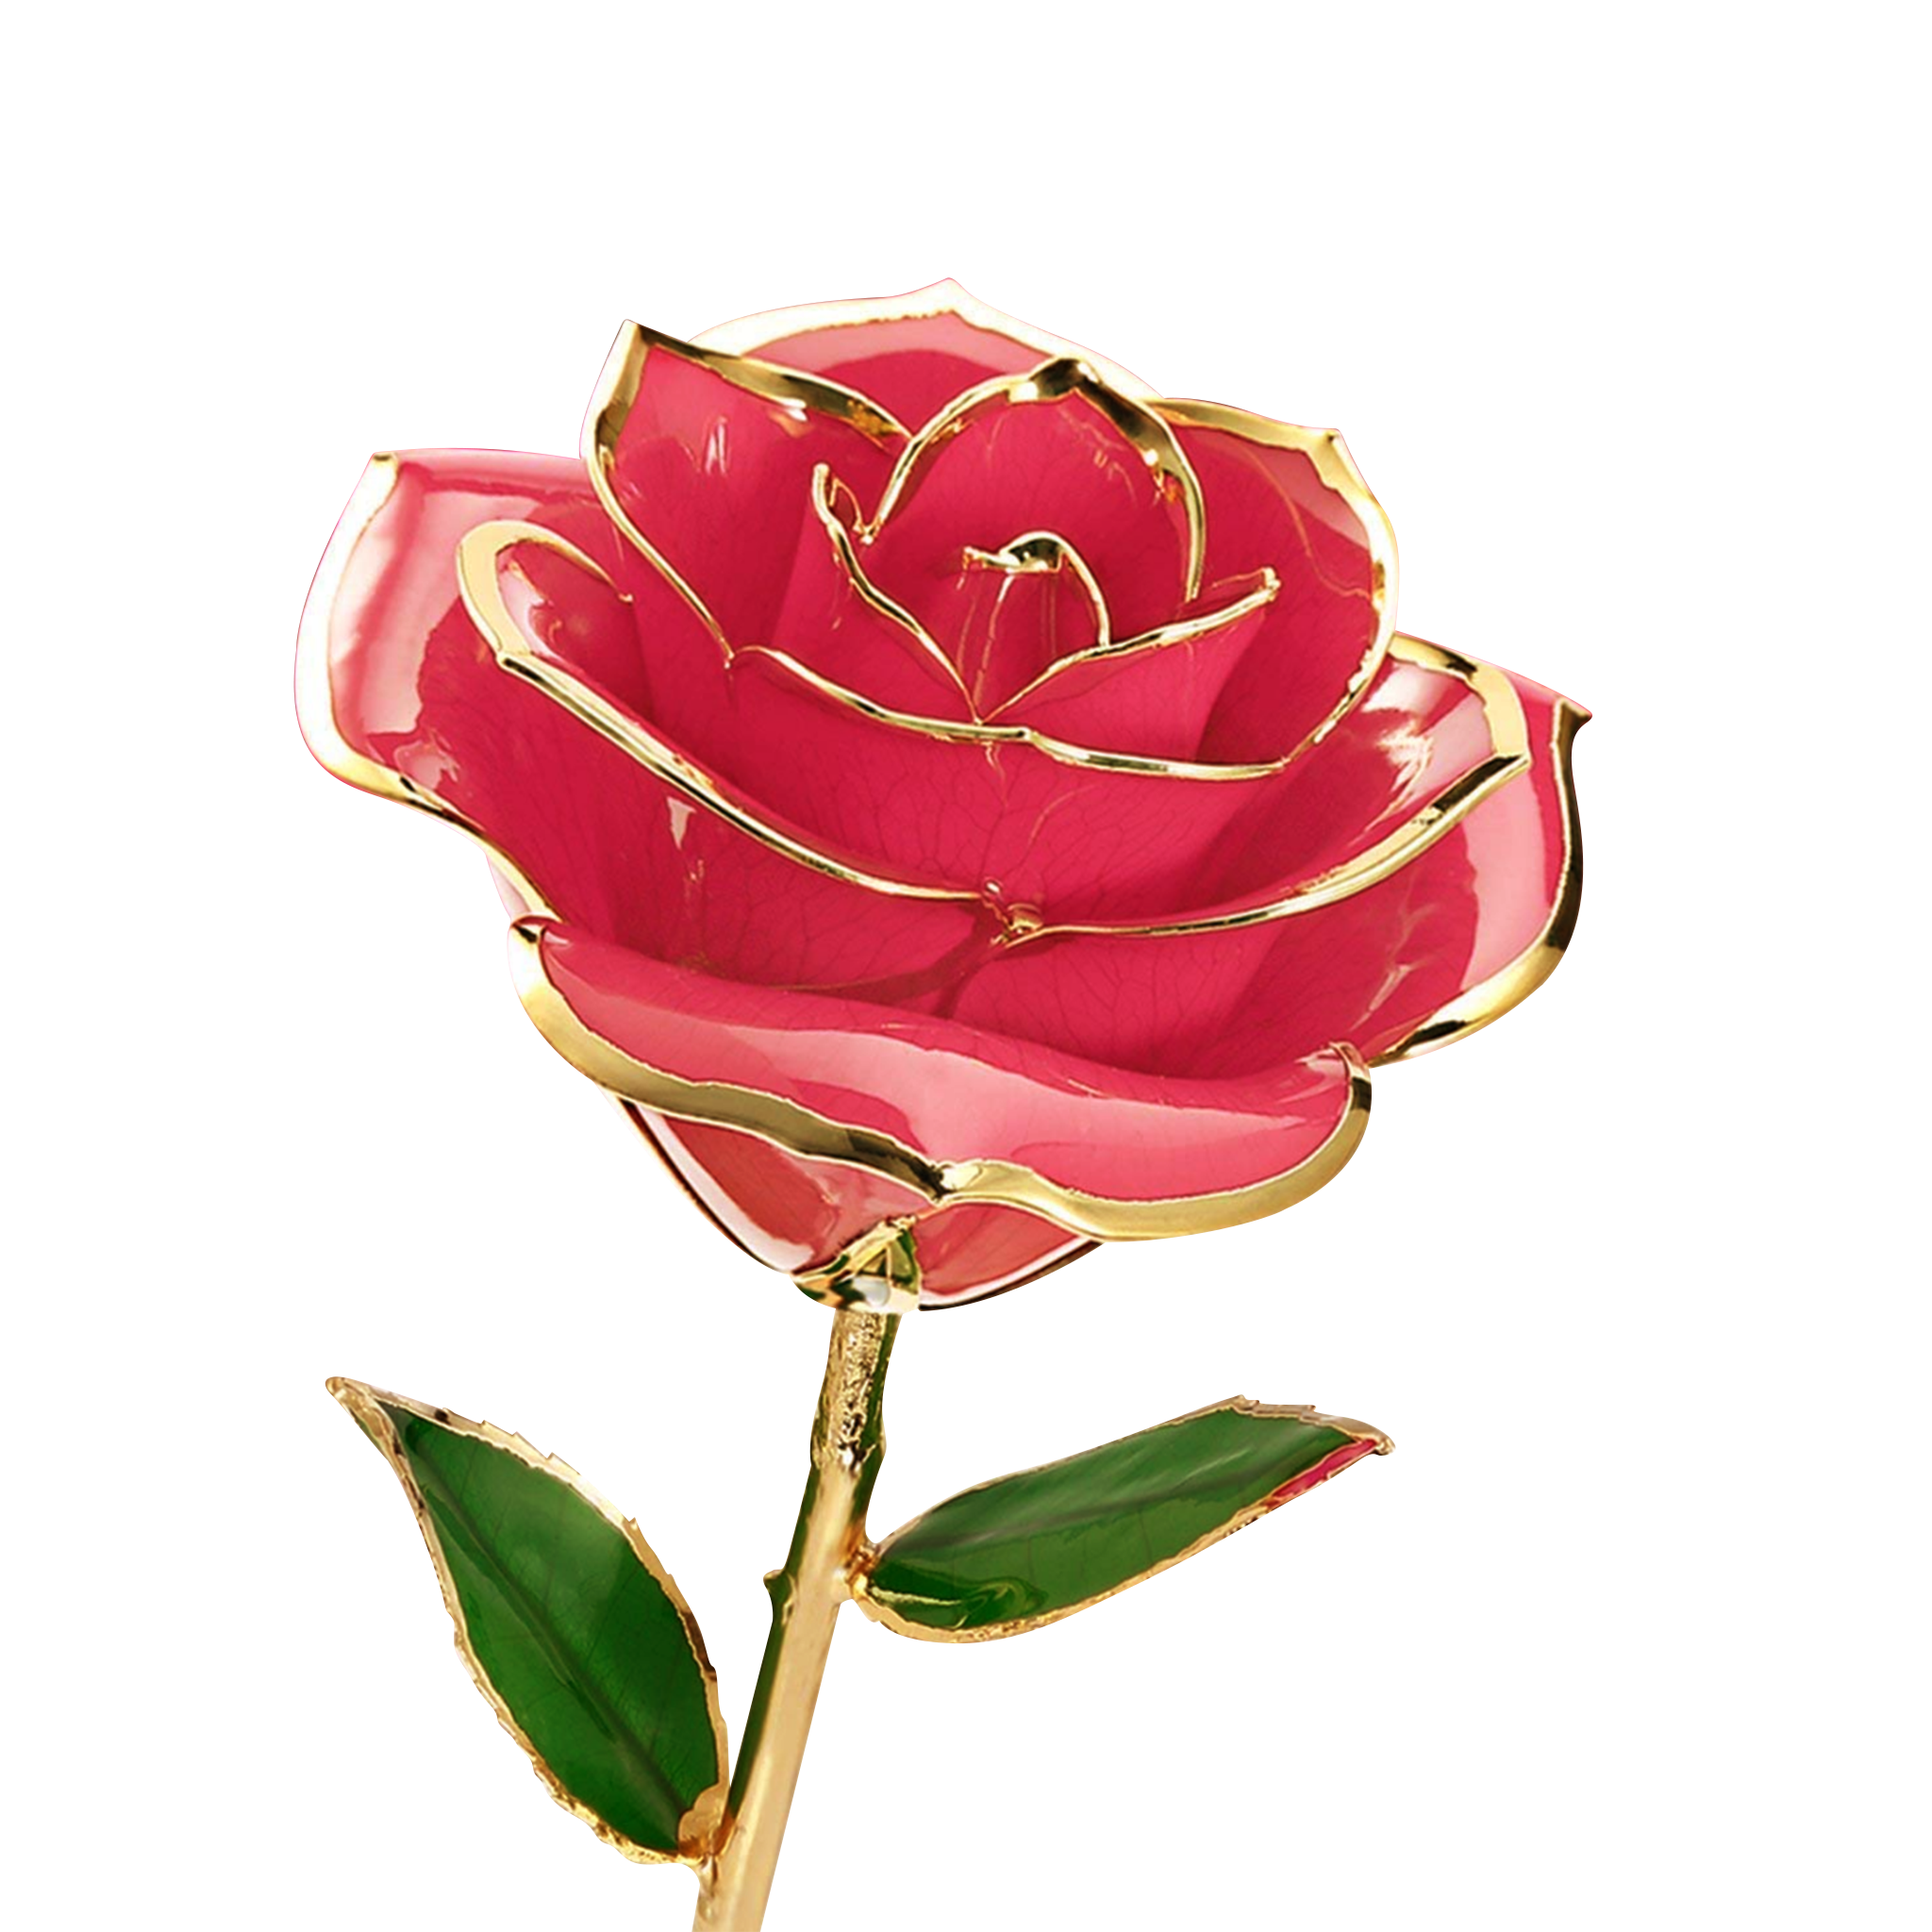 Pink Rosas flower PNG Transparent Image